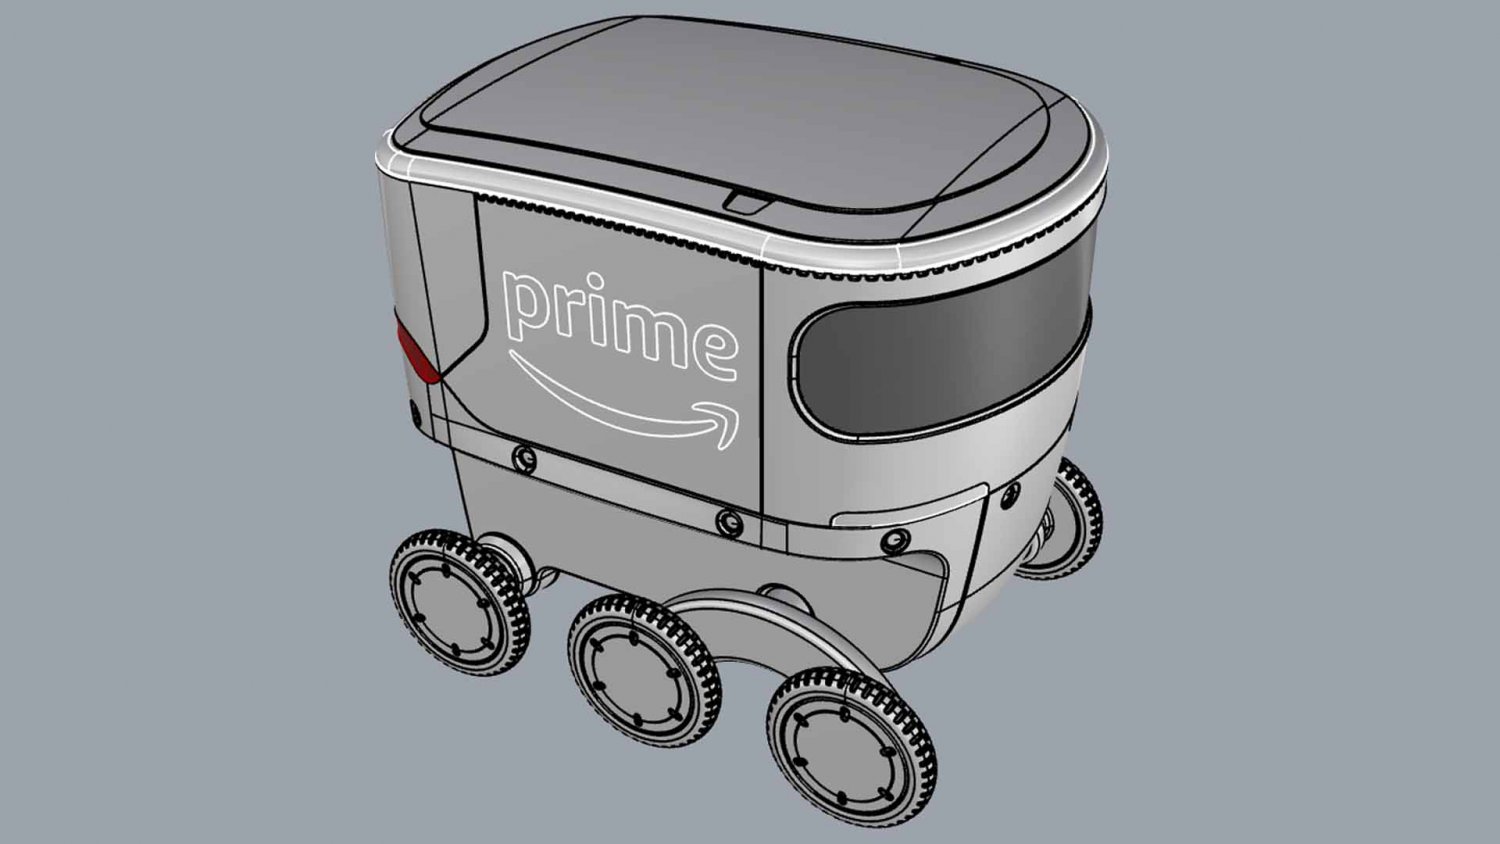 Amazon Delivery Robot White 3d Model In Robot 3dexport